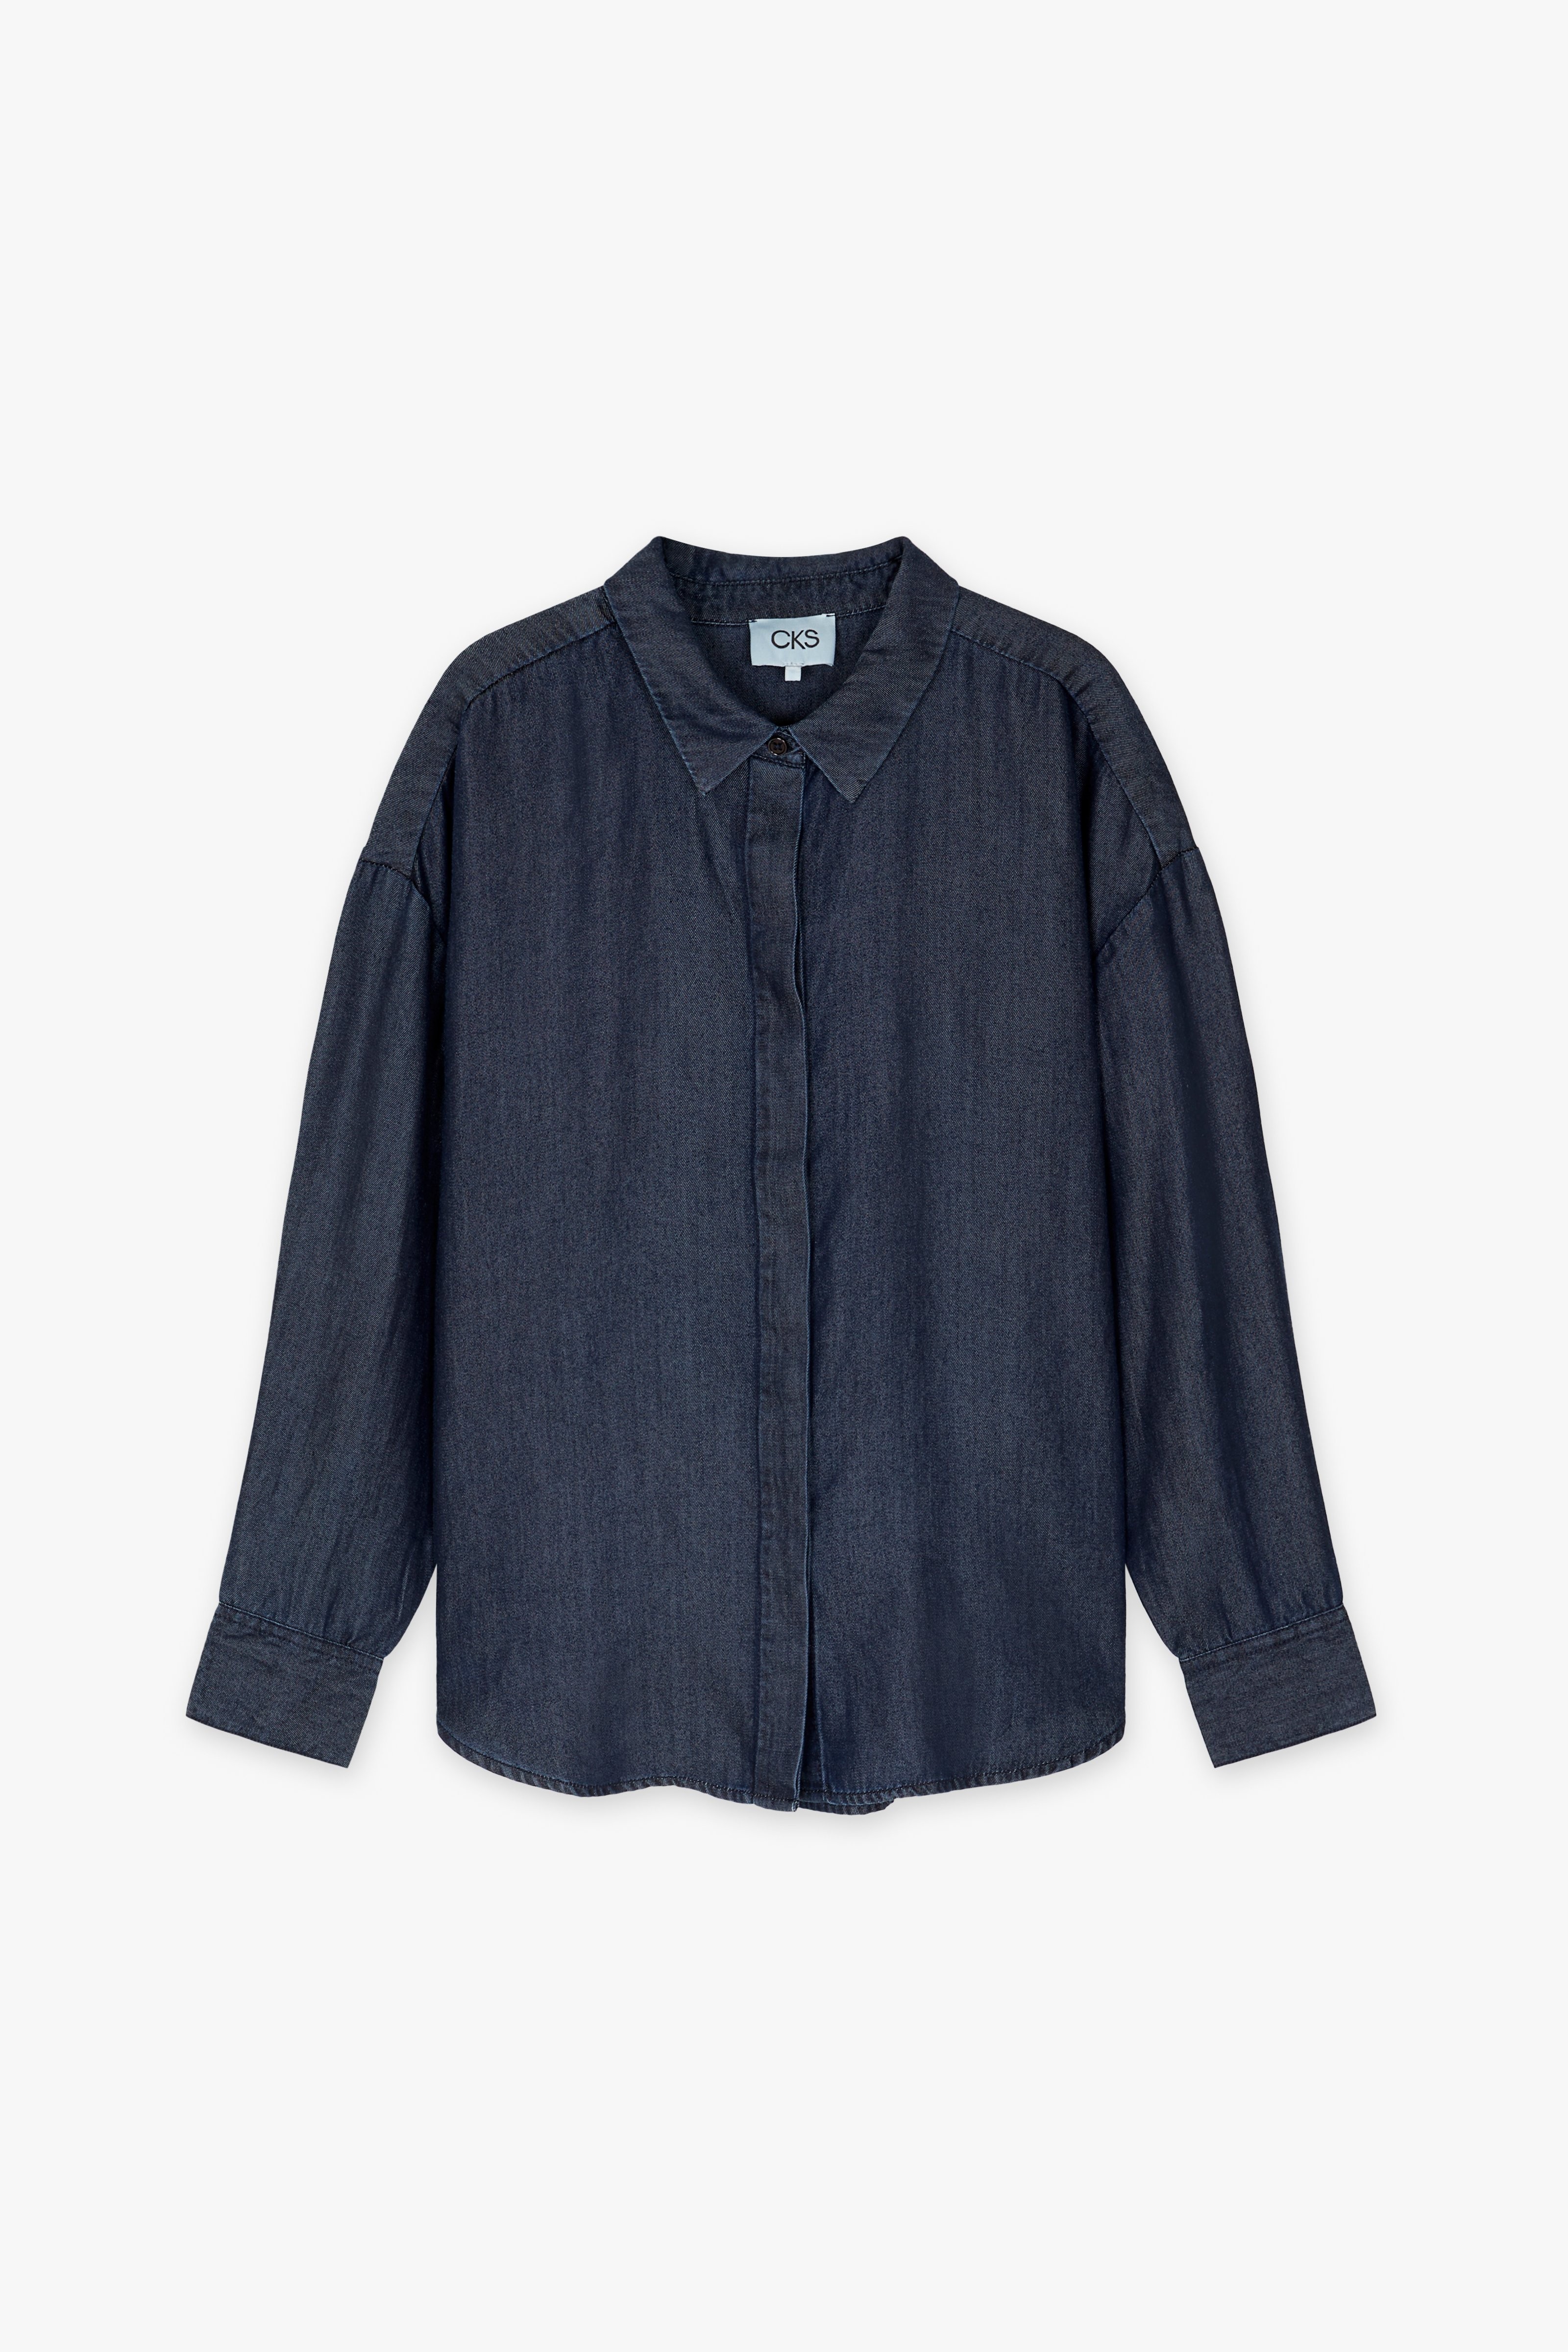 CKS Dames - RUTTENS - blouse lange mouwen - donkerblauw